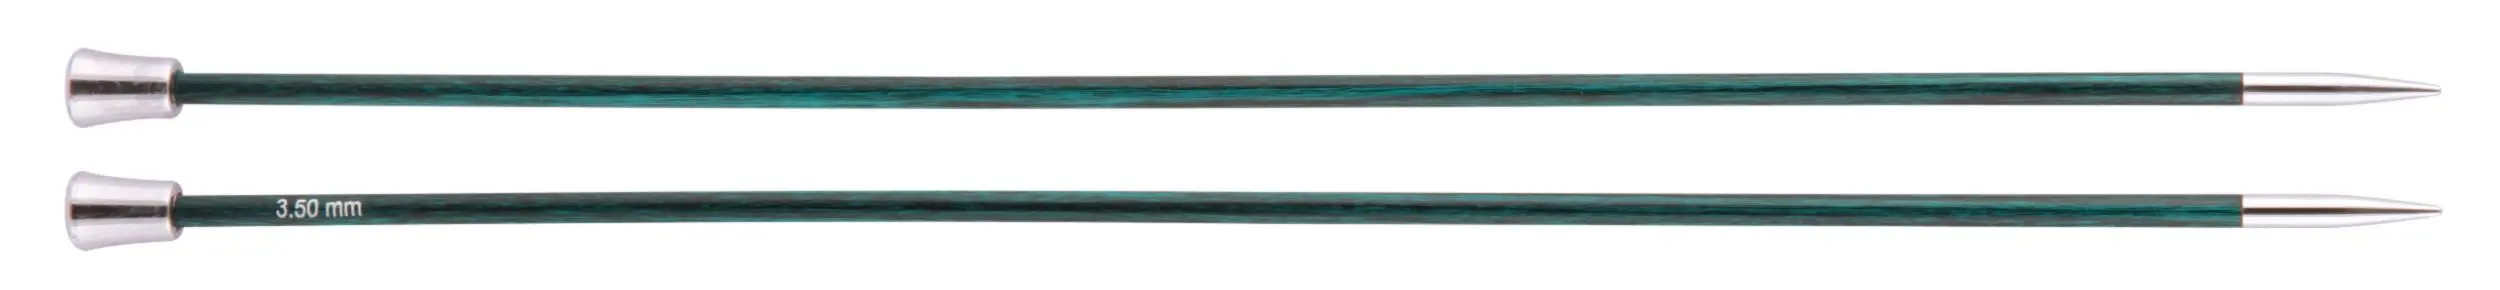 29173 Спиці прямі Royale KnitPro, 25 см, 3.50 мм